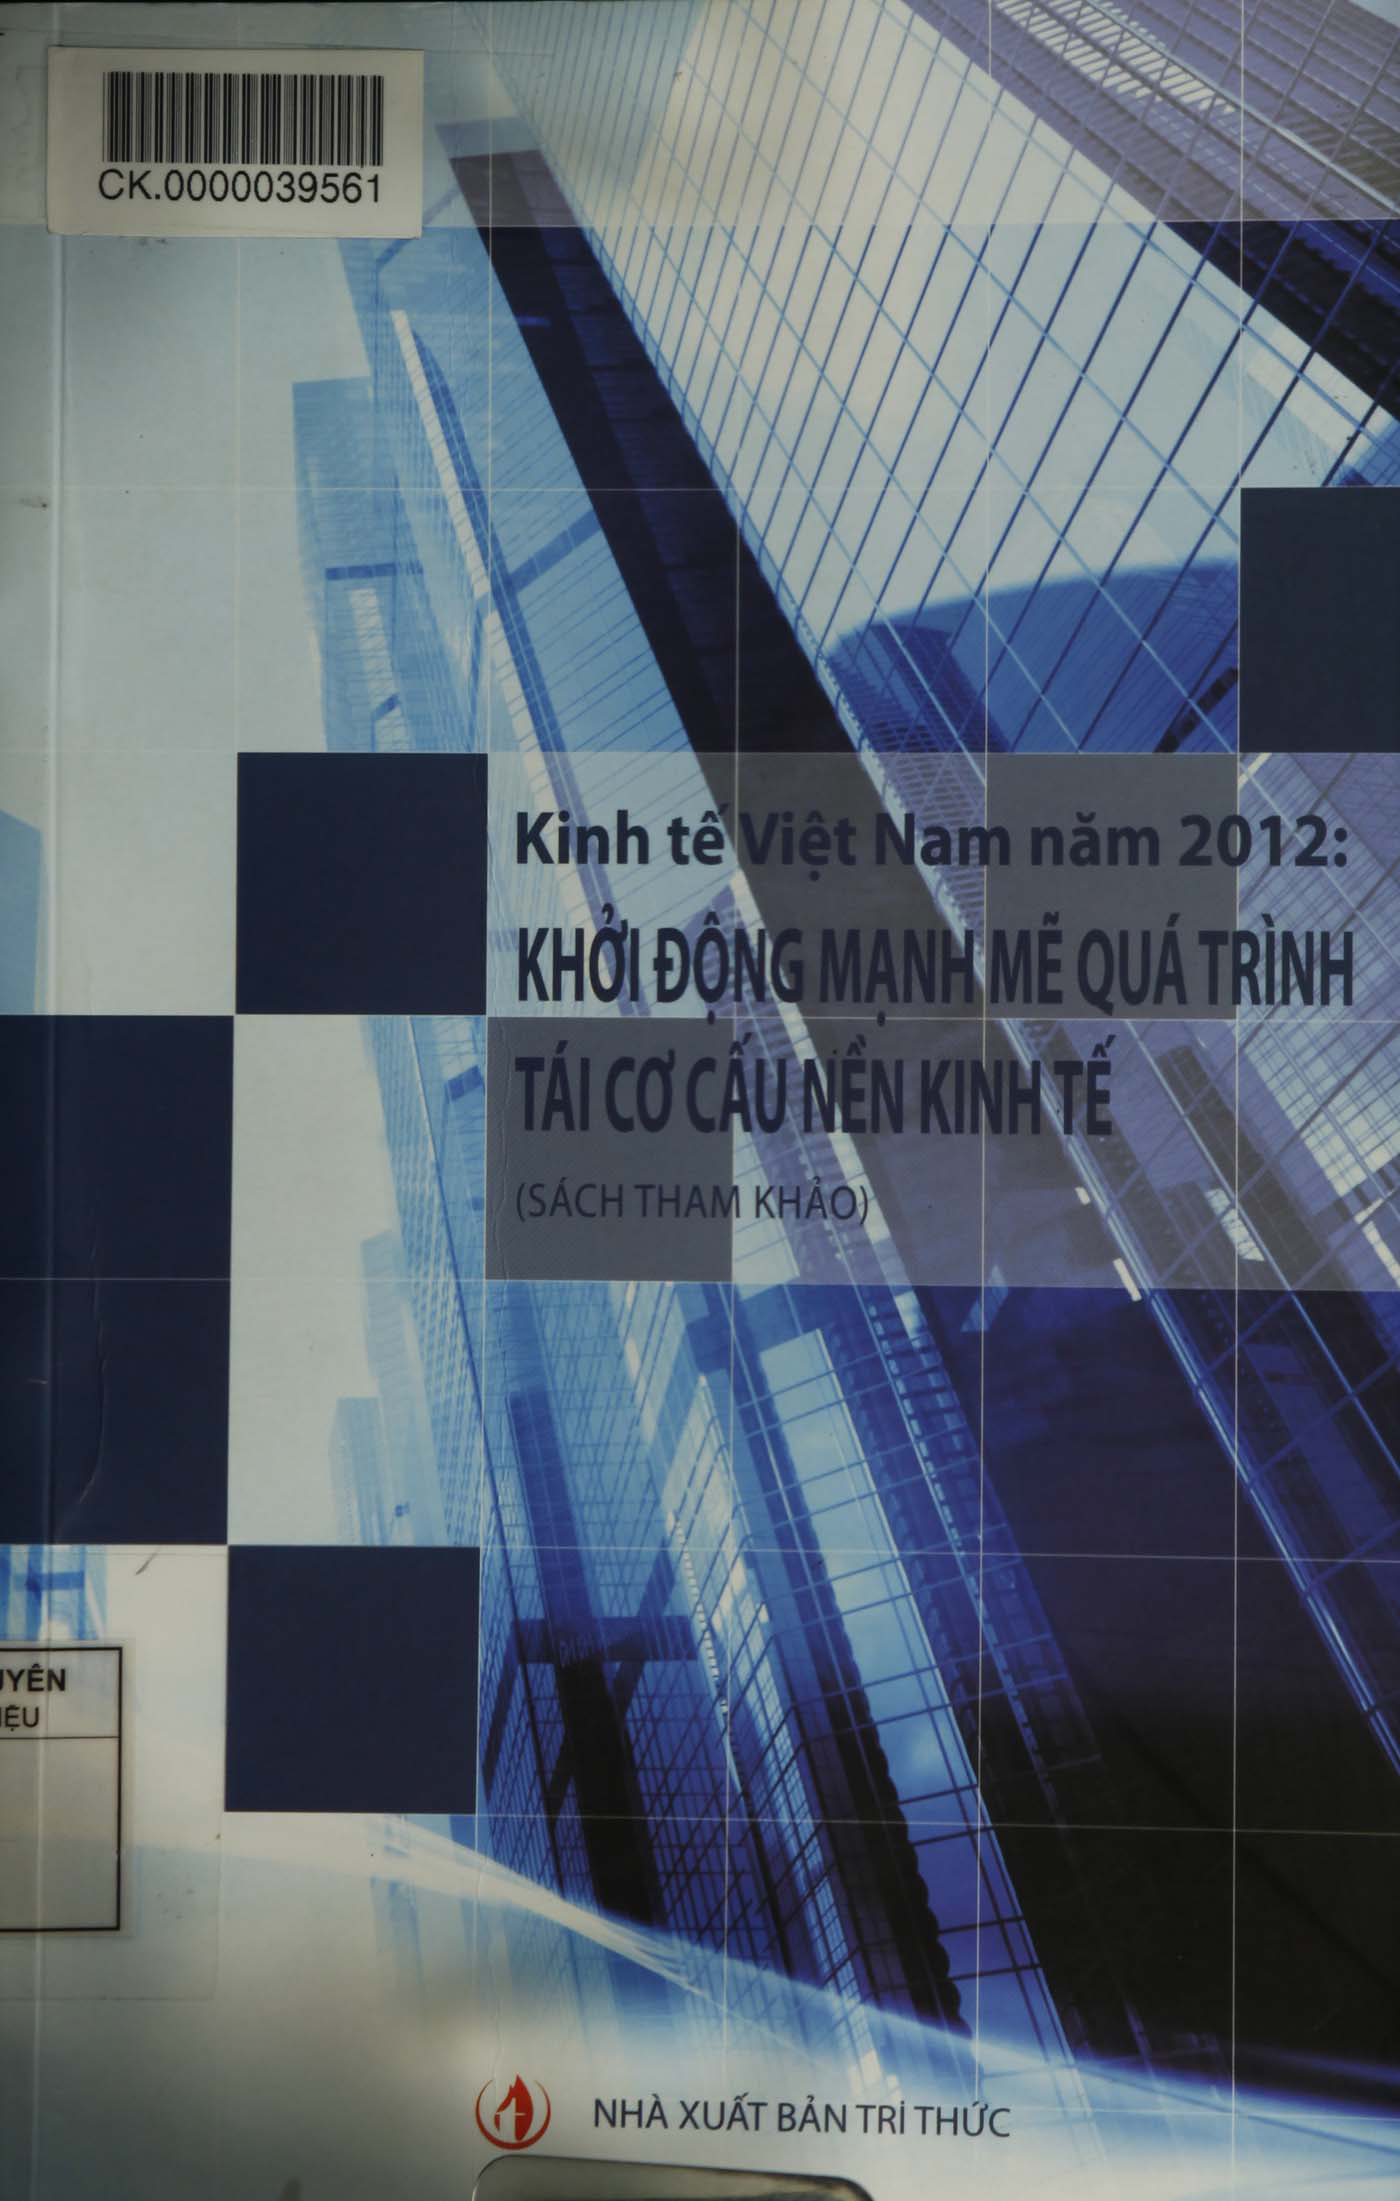 Kinh tế Việt Nam năm 2012: khởi động mạnh mẽ quá trình tái cơ cấu nền kinh tế